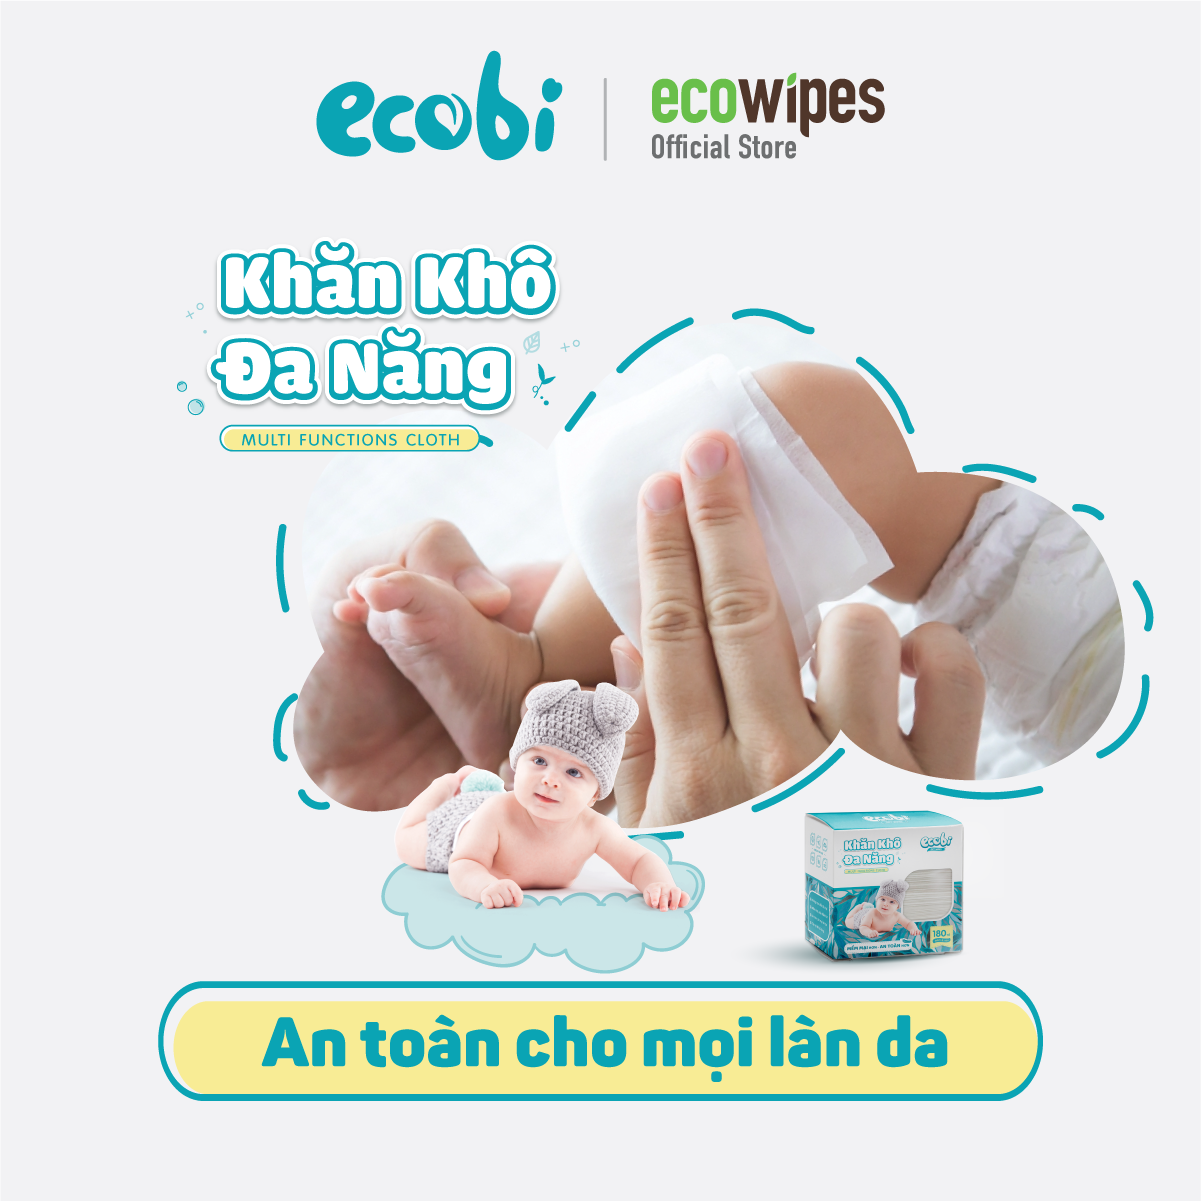 Thùng 27 Khăn khô hộp Ecobi  180 tờ dùng thay khăn sữa an toàn cho trẻ sơ sinh